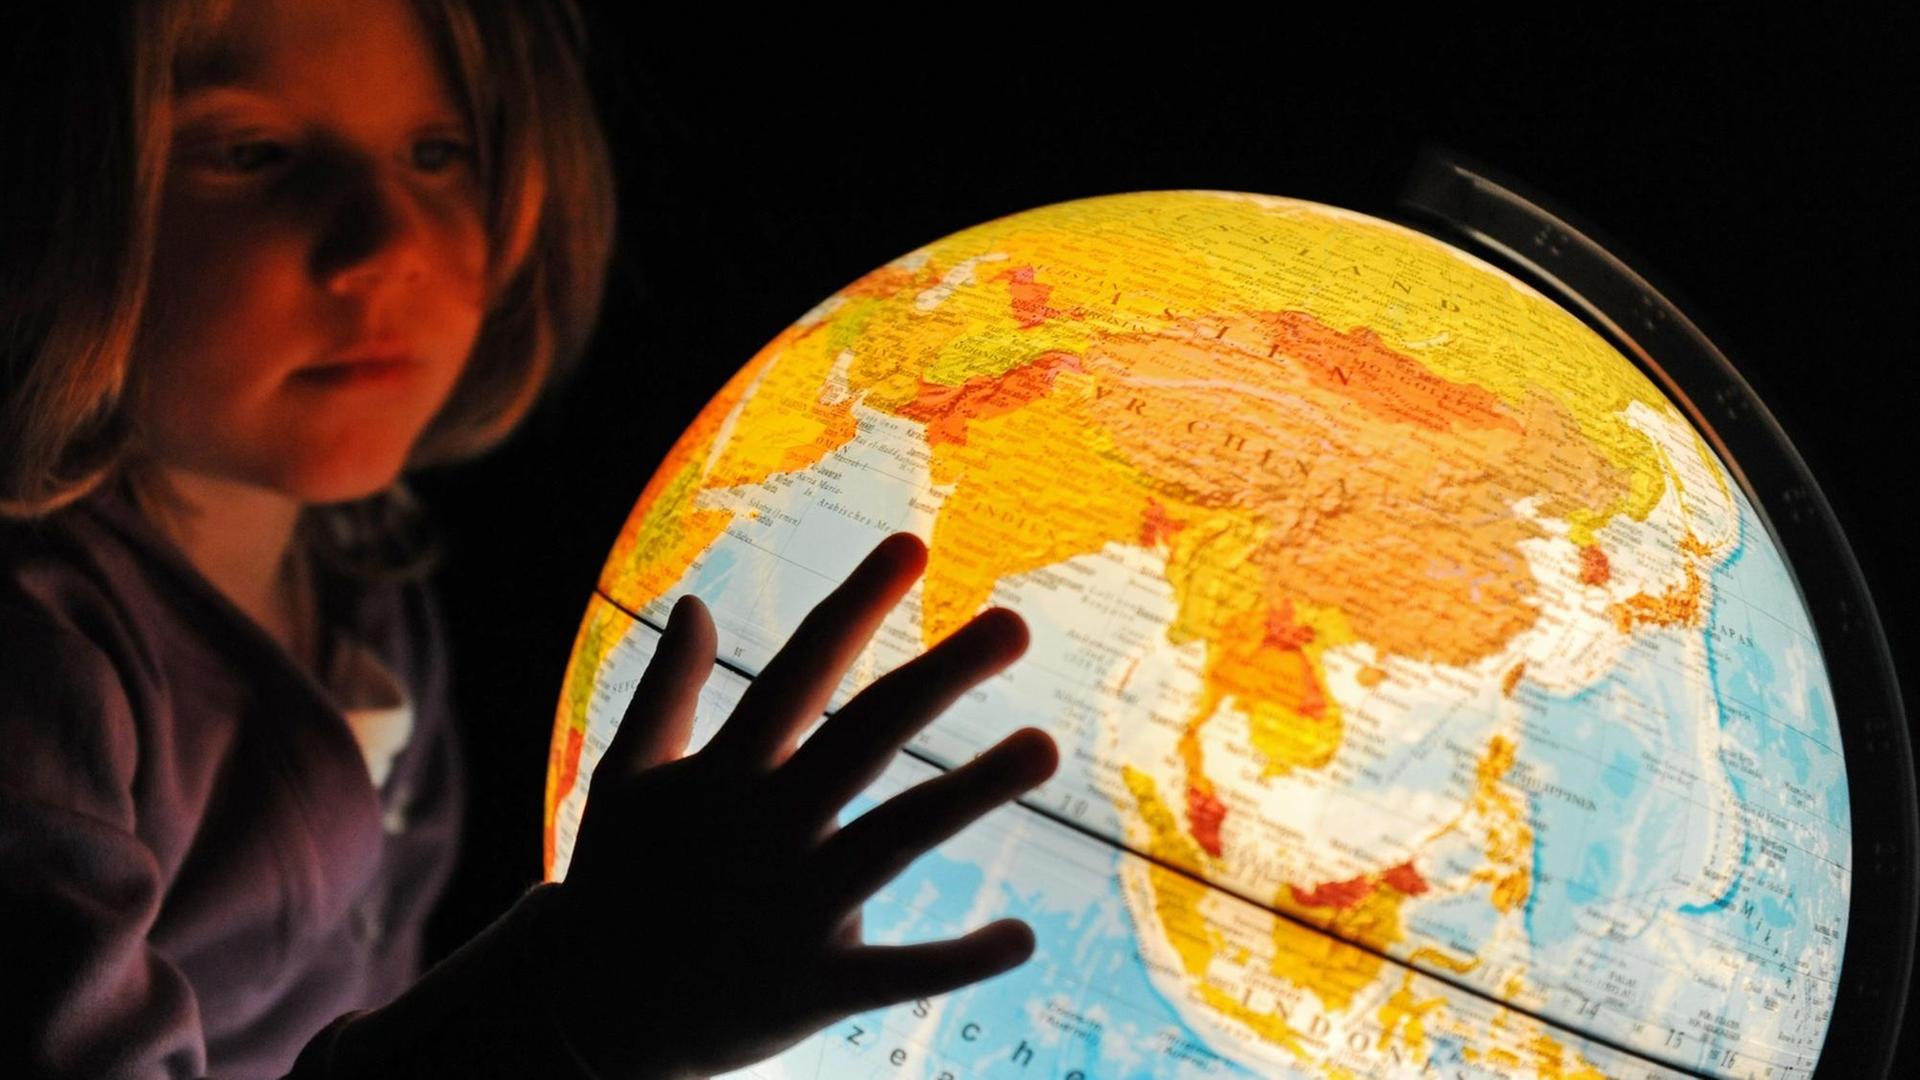 Ein kleines Mädchen betrachtet einen beleuchteten Globus, aufgenommen am 13.12.2009 in Straubing (Niederbayern).